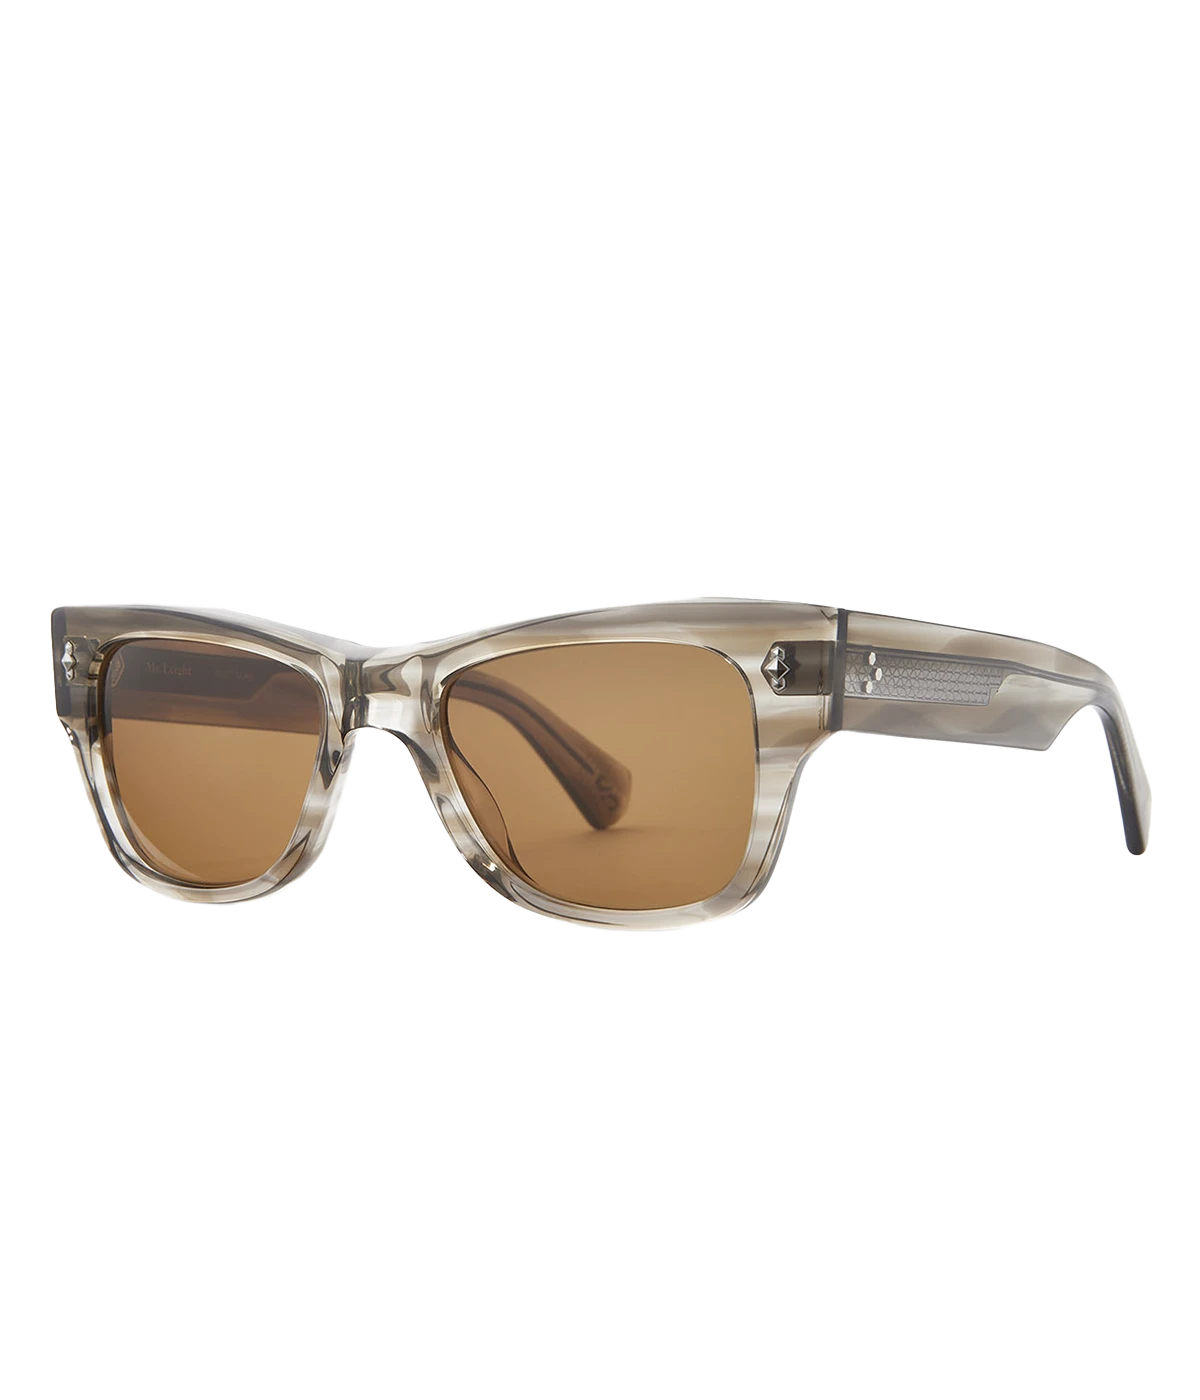 Duke S 49 Sunglasses in Grey, Pewter & Sunlit Silver